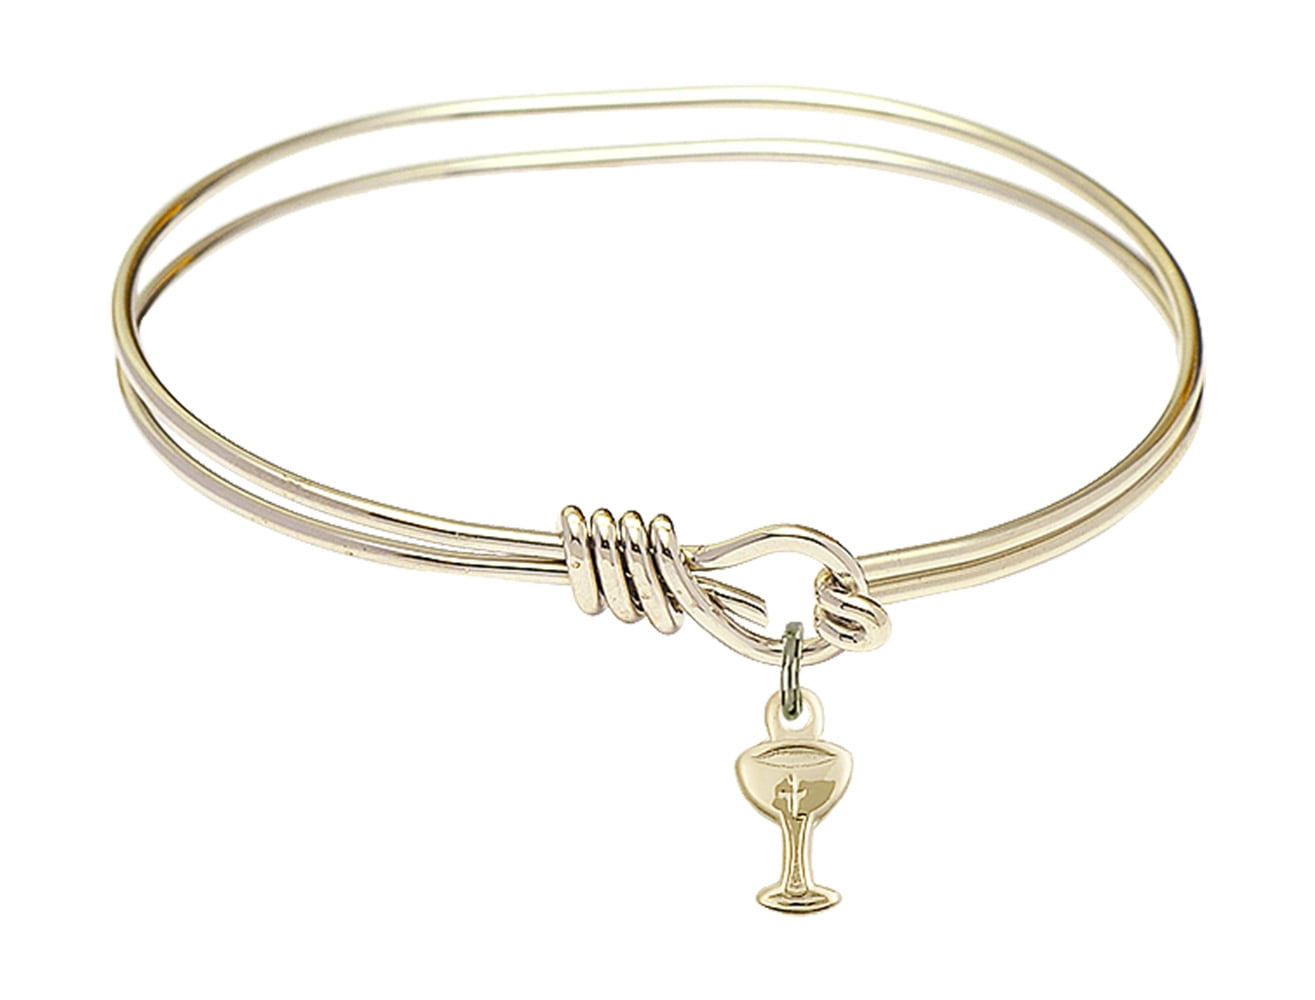 5 3/4 inch Oval Eye Hook Bangle Bracelet with a Chalice charm.